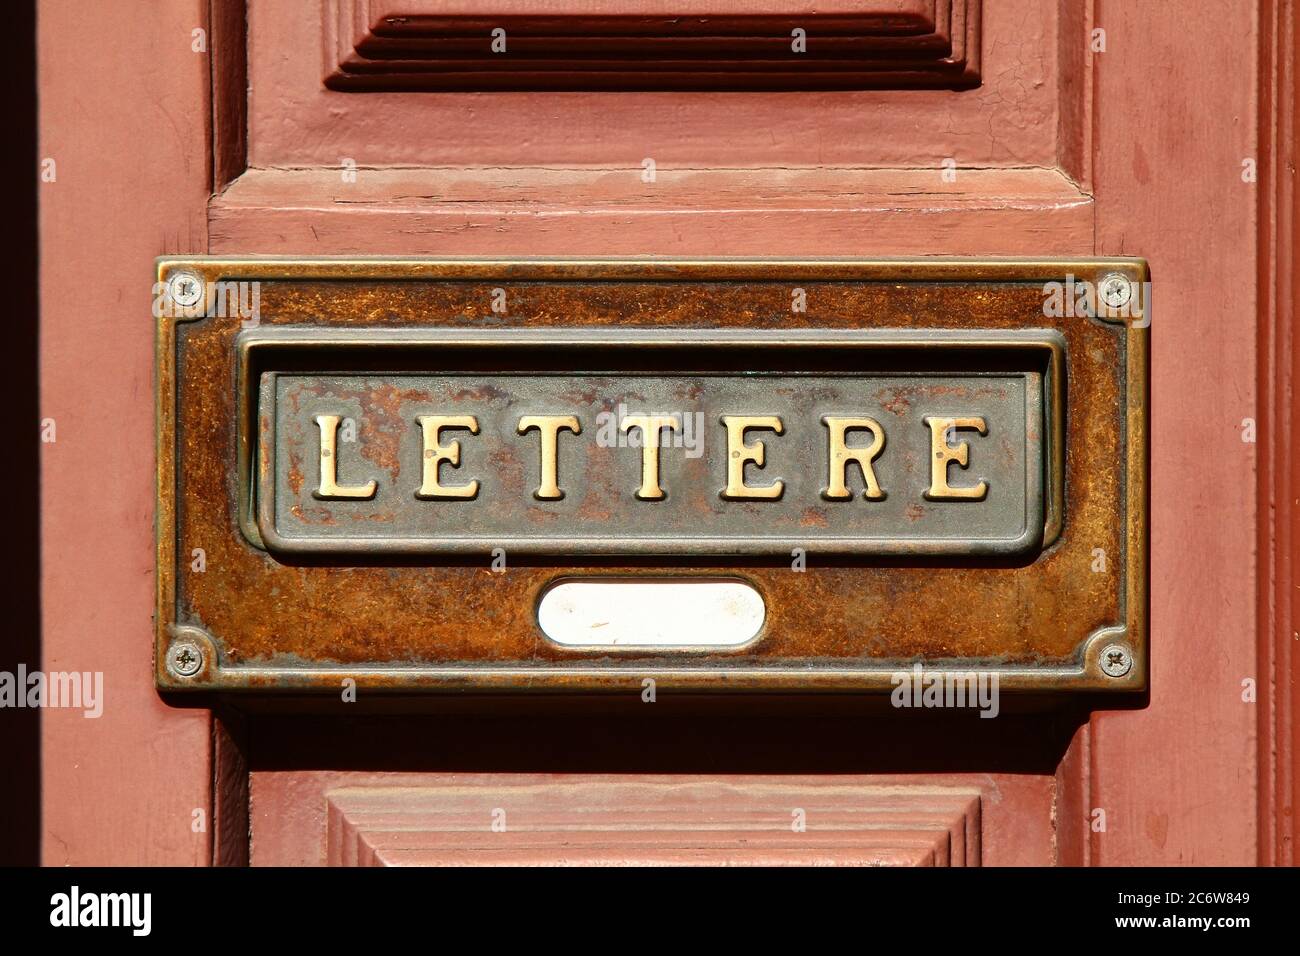 Élément décoratif. Boîte aux lettres en laiton vintage avec texte « lettere ». Pise. Italie. Banque D'Images